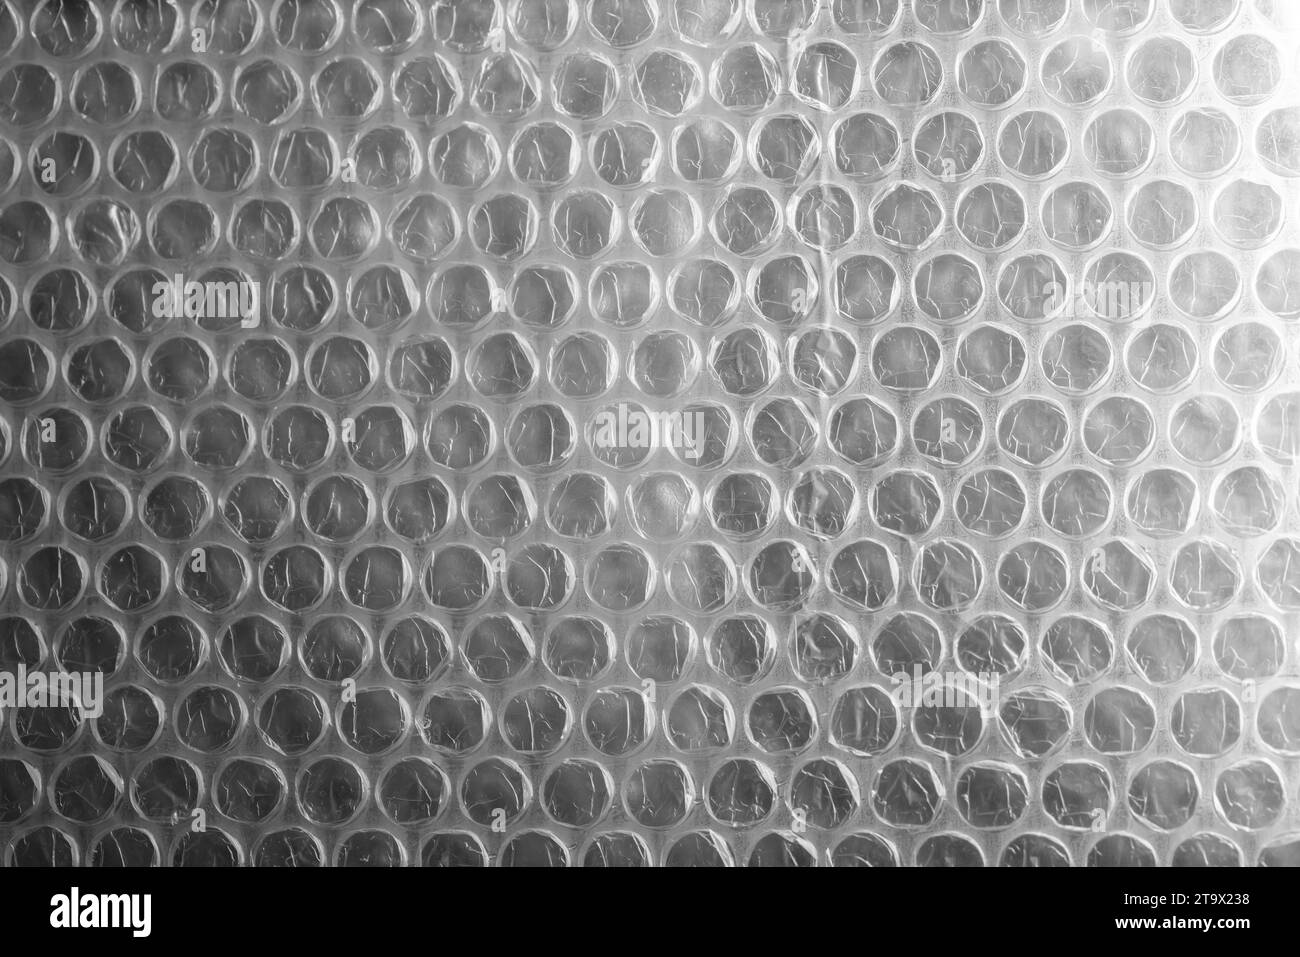 Film à bulles, photo de fond en gros plan. C'est une matière plastique transparente pliable avec des bulles d'air utilisé pour emballer des articles fragiles Banque D'Images